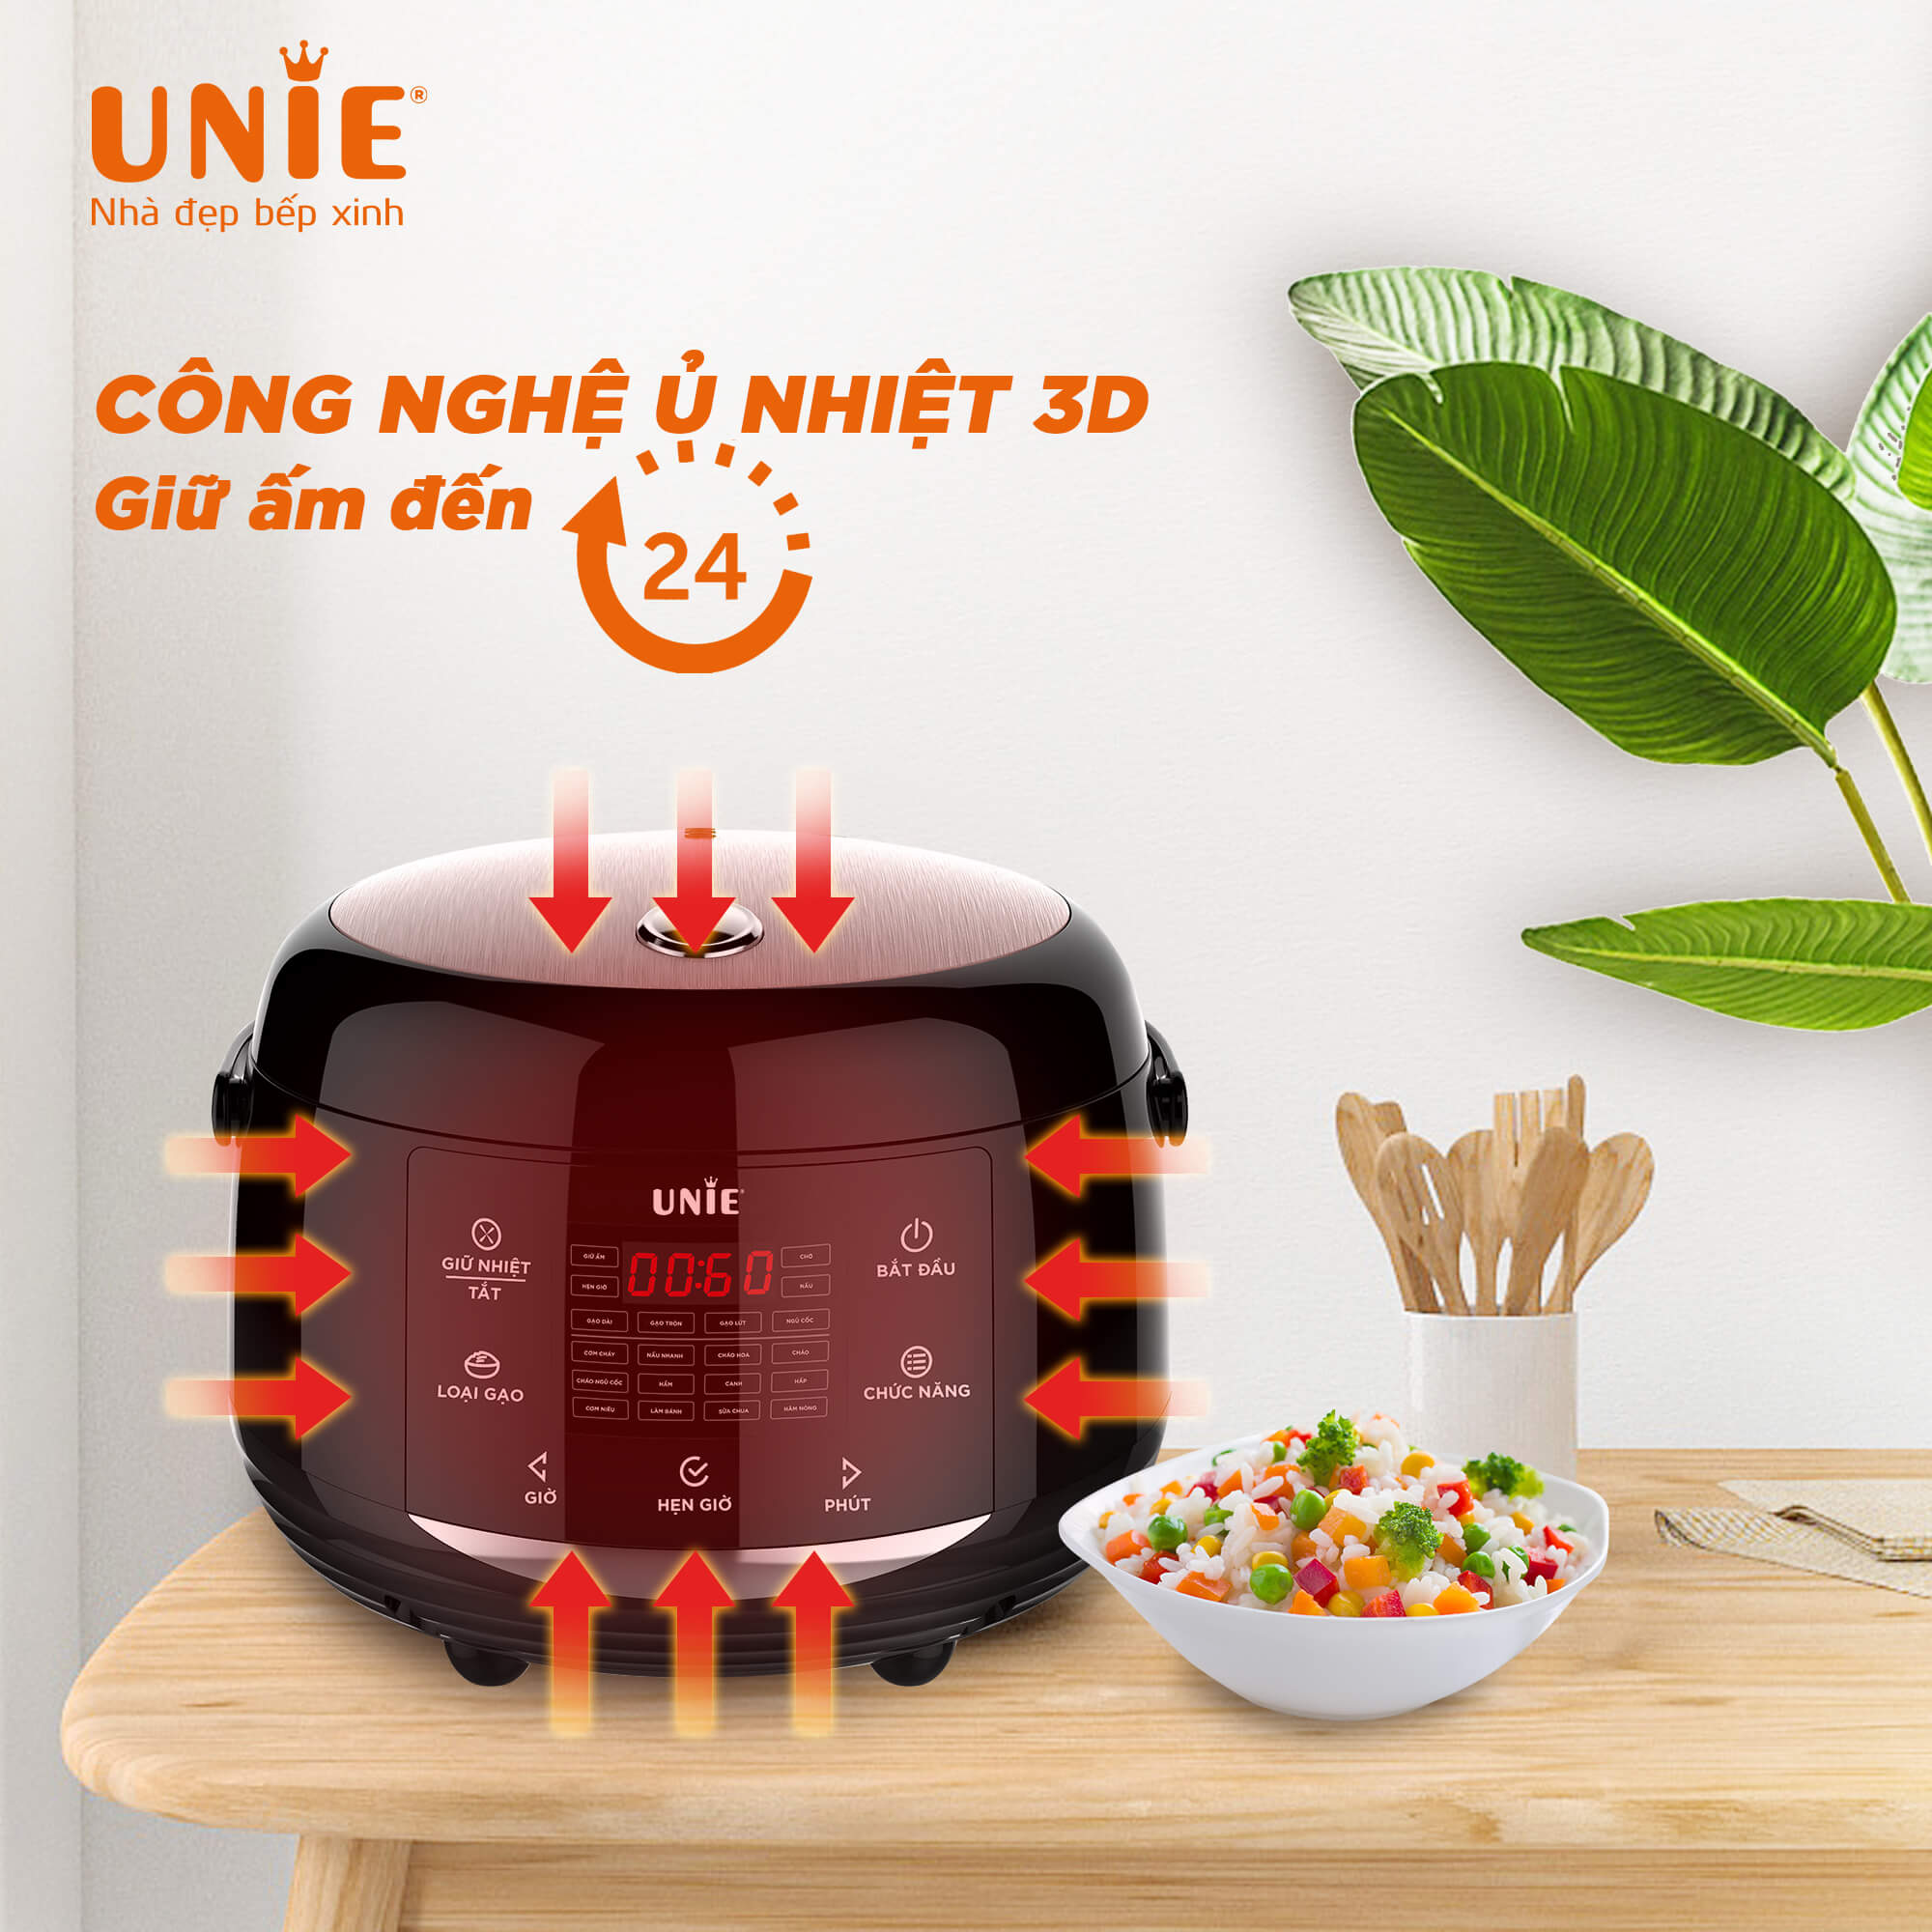 Nồi cơm điện UNIE UEC1572B,Công nghệ ủ nhiệt 3D,Lòng nồi gốm cao cấp,giữ ấm lên tới 24h, 16 chương trình nấu đa dạng-hàng chính hãng UNIE